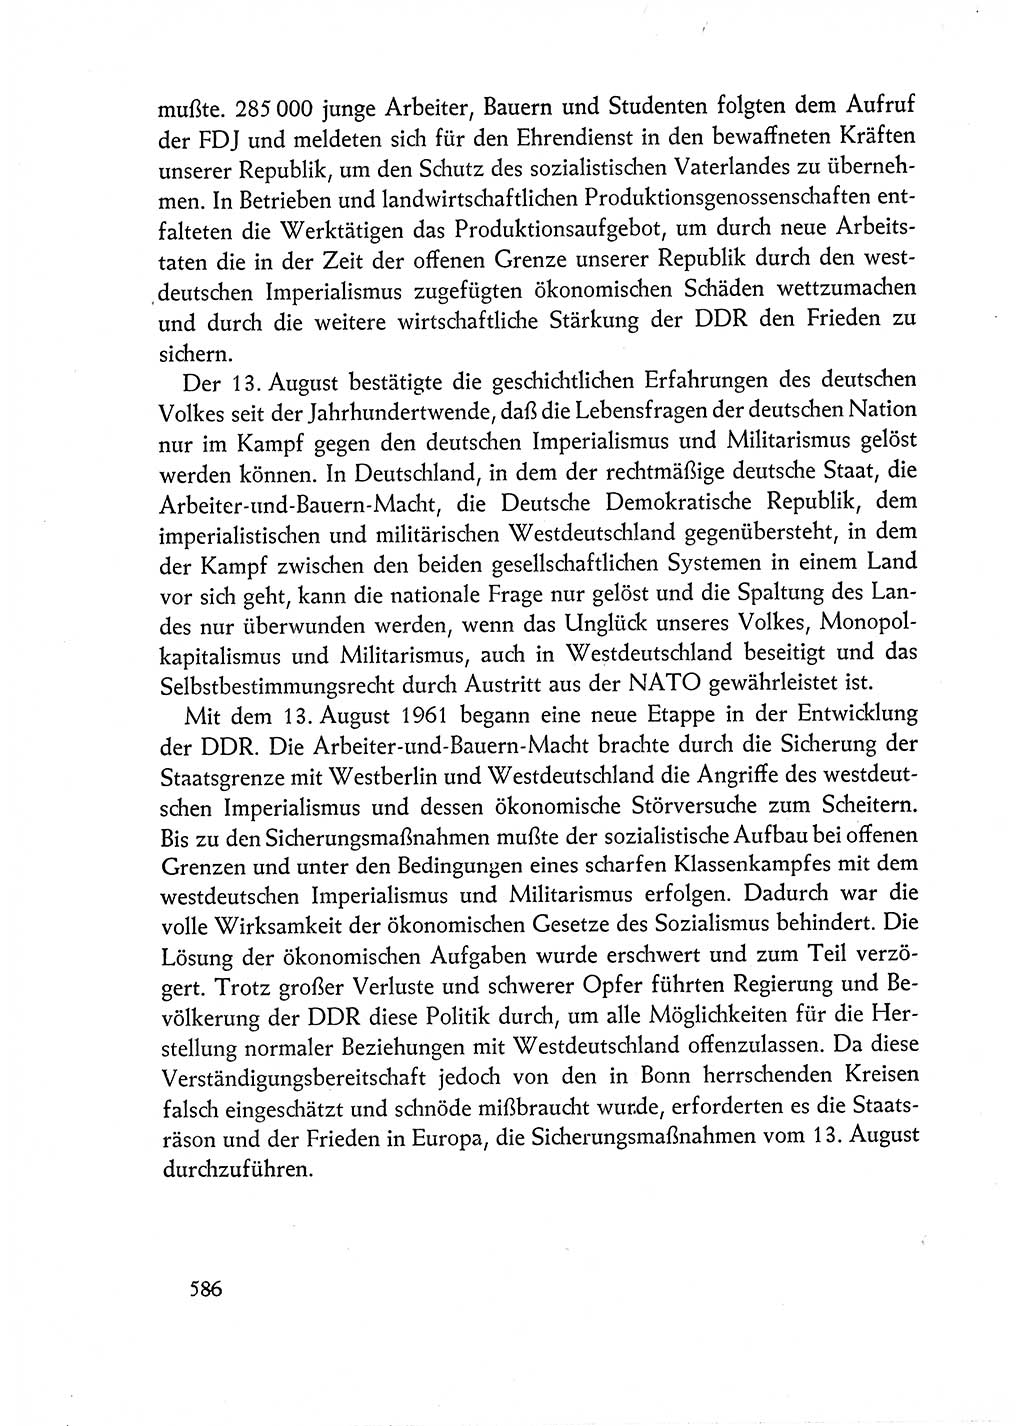 Dokumente der Sozialistischen Einheitspartei Deutschlands (SED) [Deutsche Demokratische Republik (DDR)] 1962-1963, Seite 586 (Dok. SED DDR 1962-1963, S. 586)